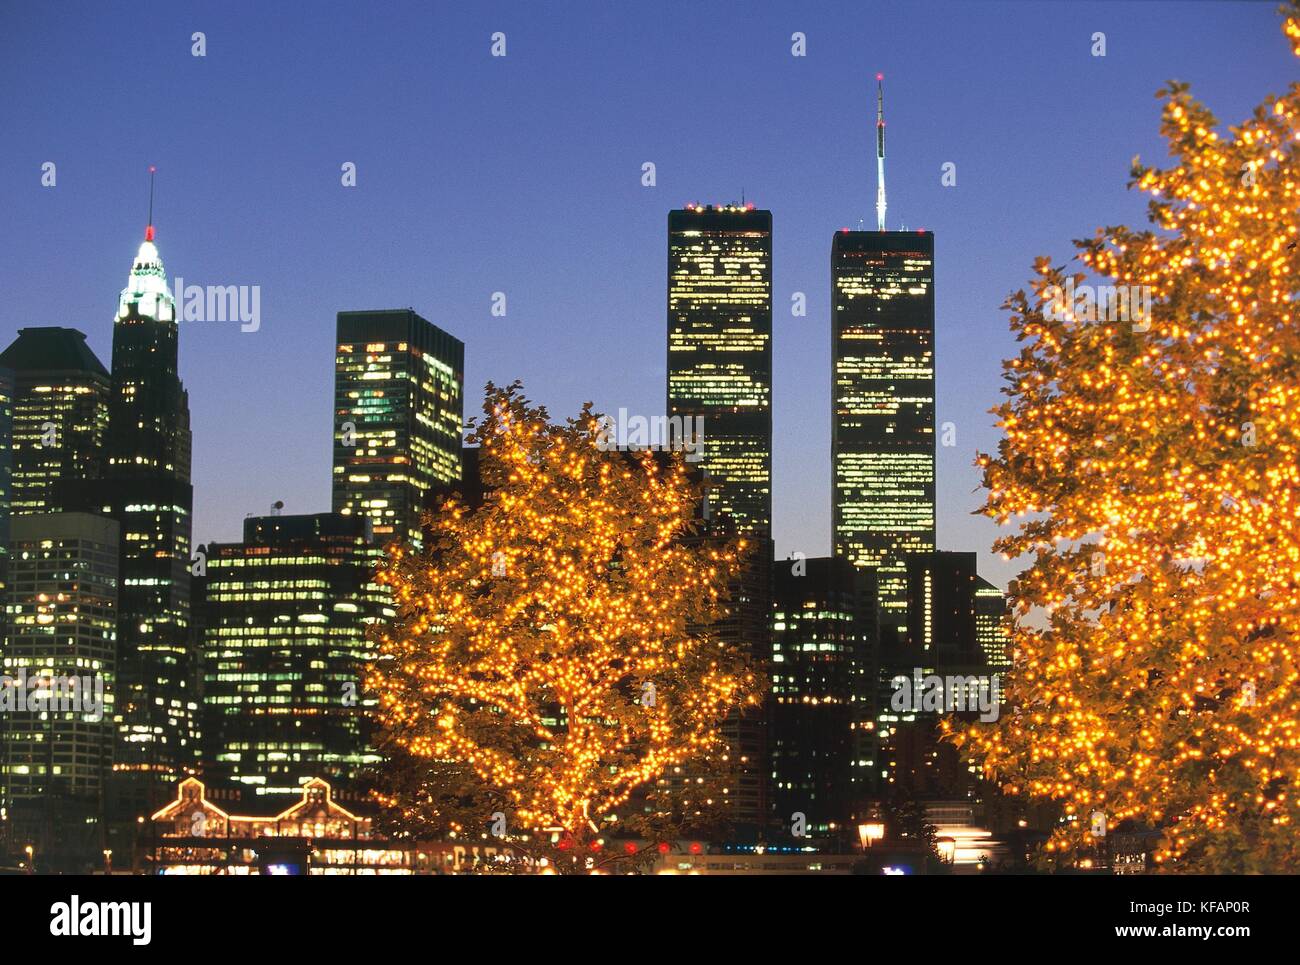 États-unis d'Amérique, le xxe siècle, les années 90, new york, manhattan. nuit avec les tours jumelles du World Trade Center, puis détruit par l'attaque du 11 septembre 2001. nuit. Banque D'Images